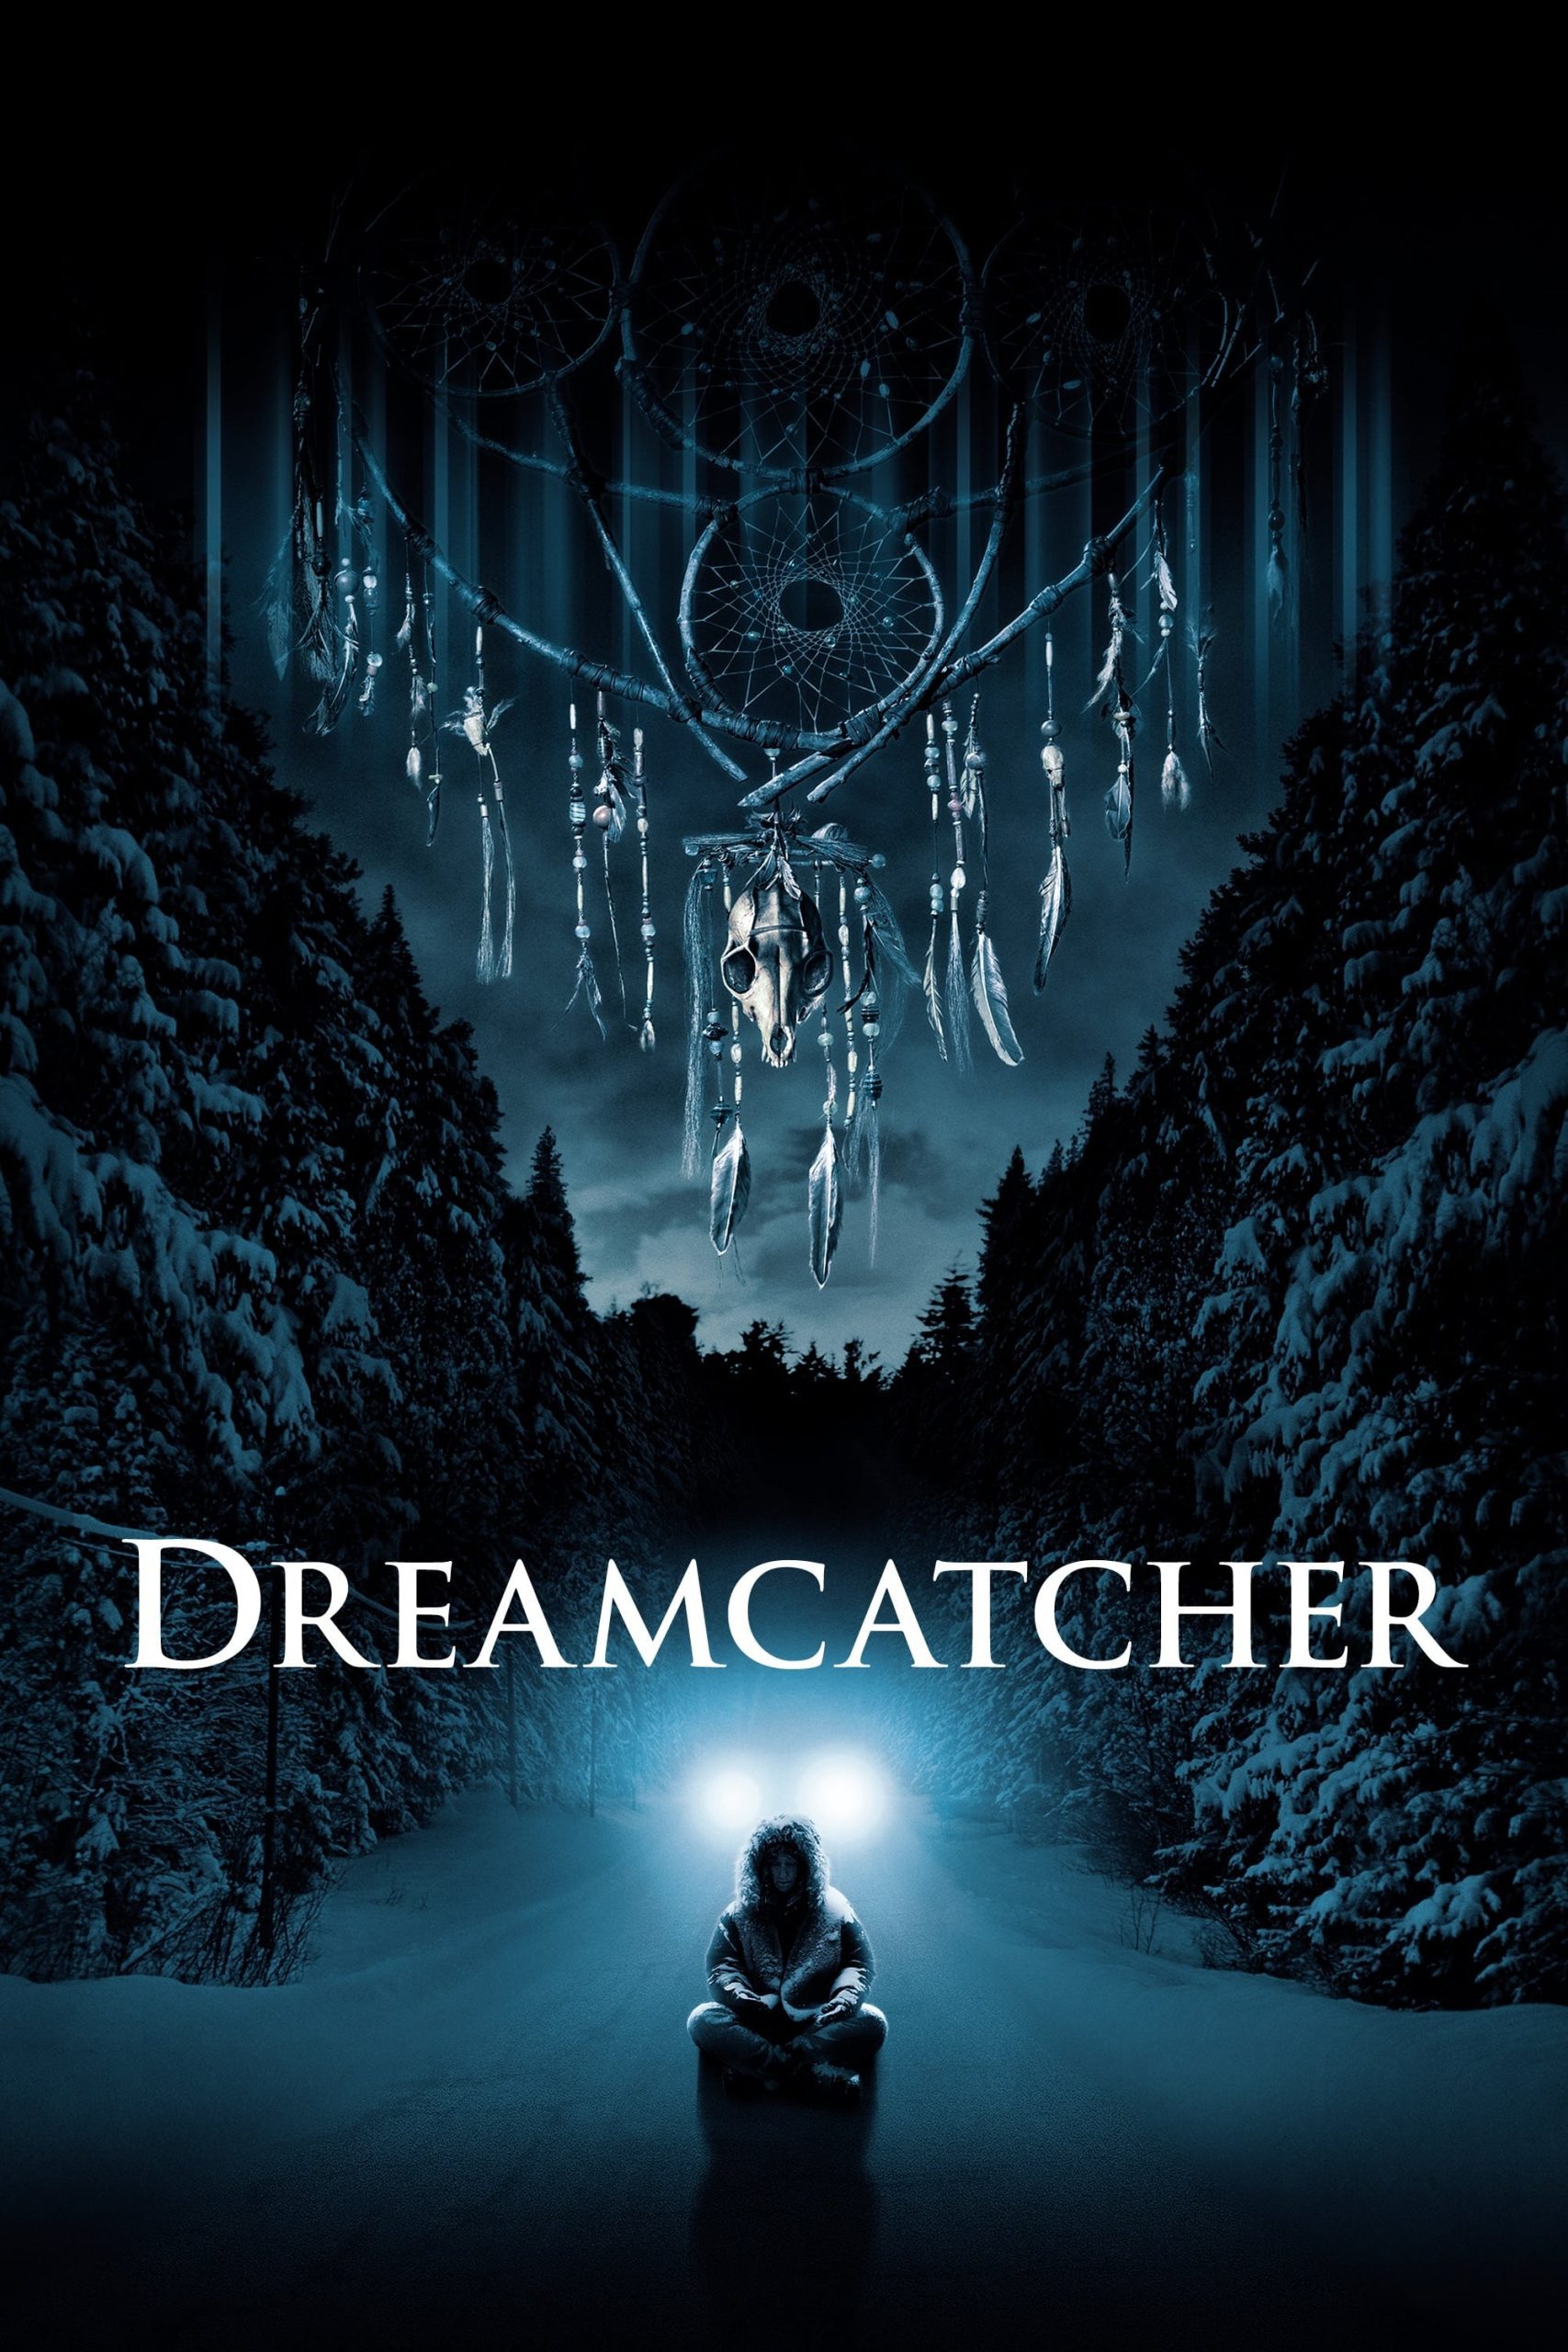 ดูหนังออนไลน์ฟรี Dreamcatcher ล่าฝันมัจจุราช อสูรกายกินโลก